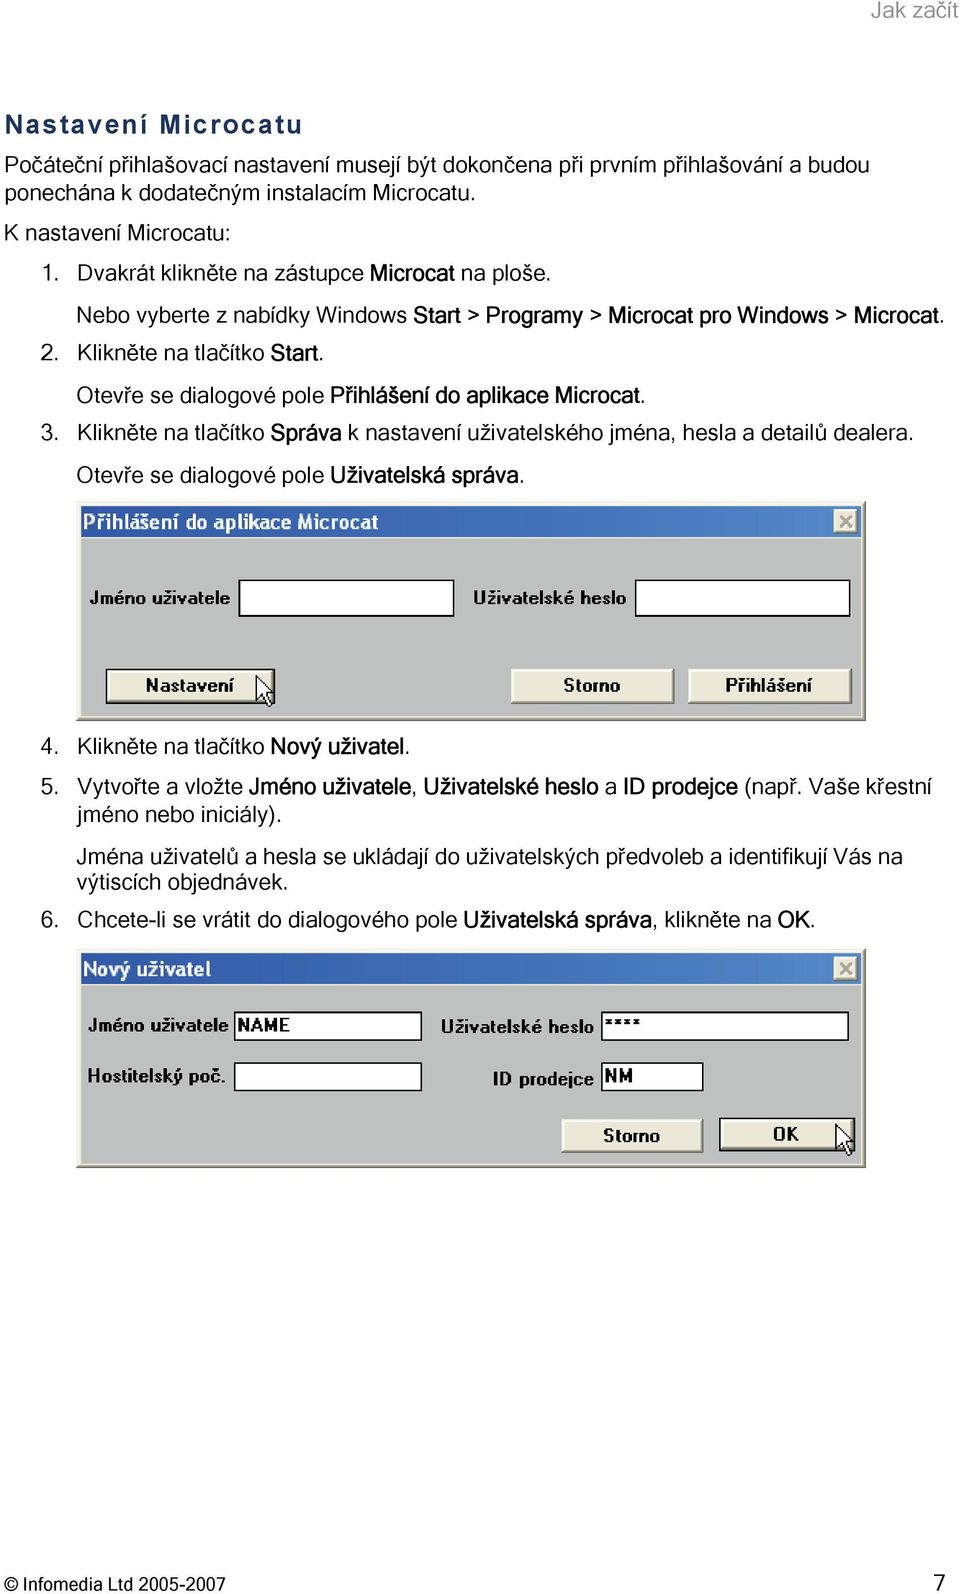 Otevře se dialogové pole Přihlášení do aplikace Microcat. 3. Klikněte na tlačítko Správa k nastavení uživatelského jména, hesla a detailů dealera. Otevře se dialogové pole Uživatelská správa. 4.